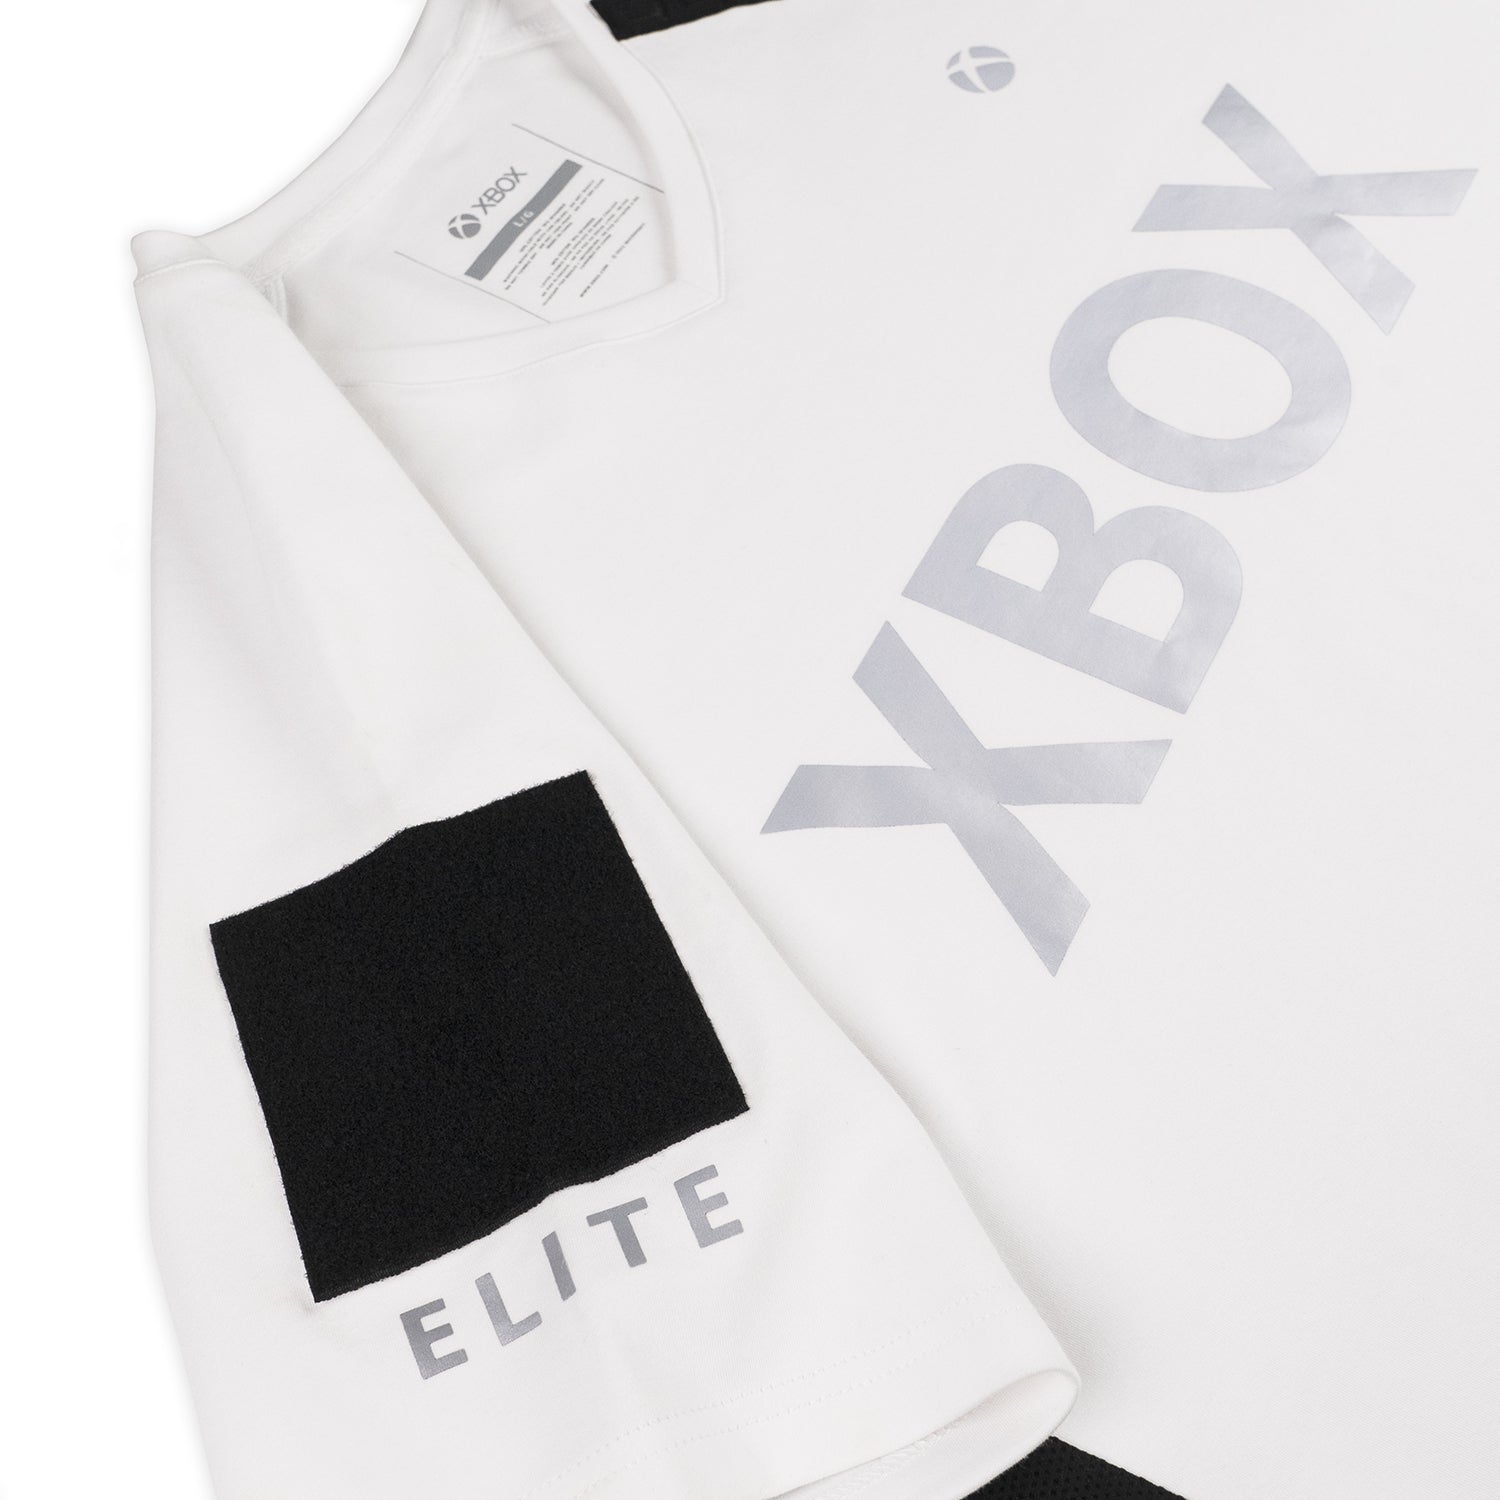 vp-dotexe Xbox Elite Core White Jersey White / XXL